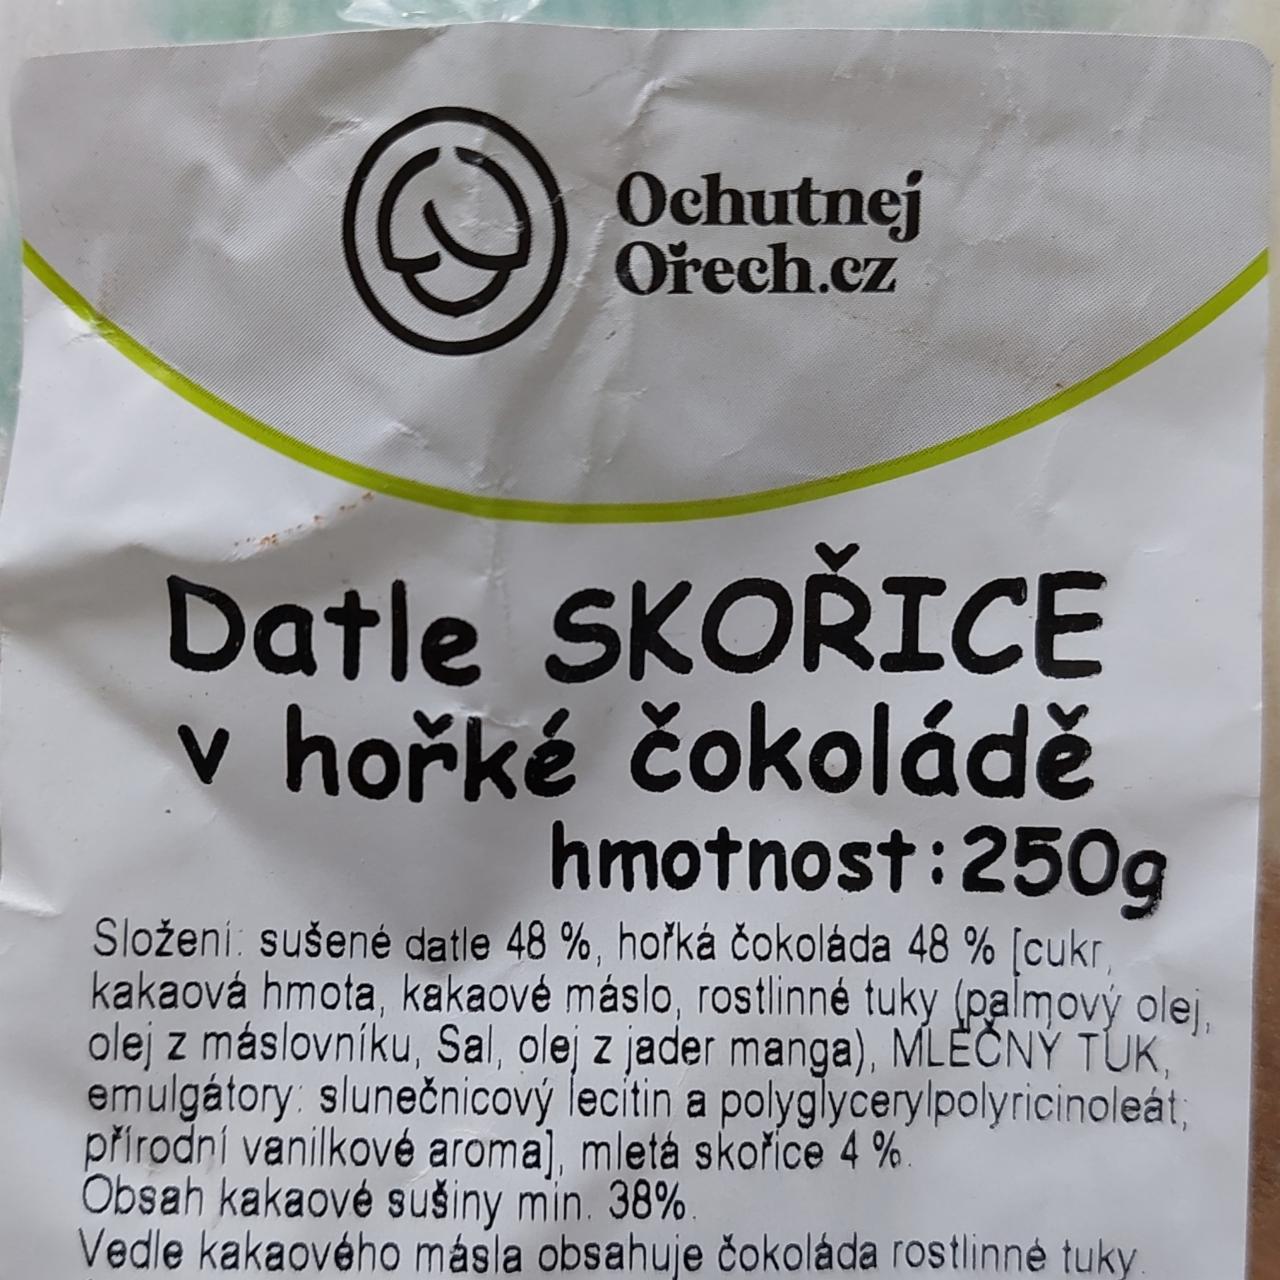 Fotografie - Datle skořice v hořké čokoládě Ochutnejorech.cz